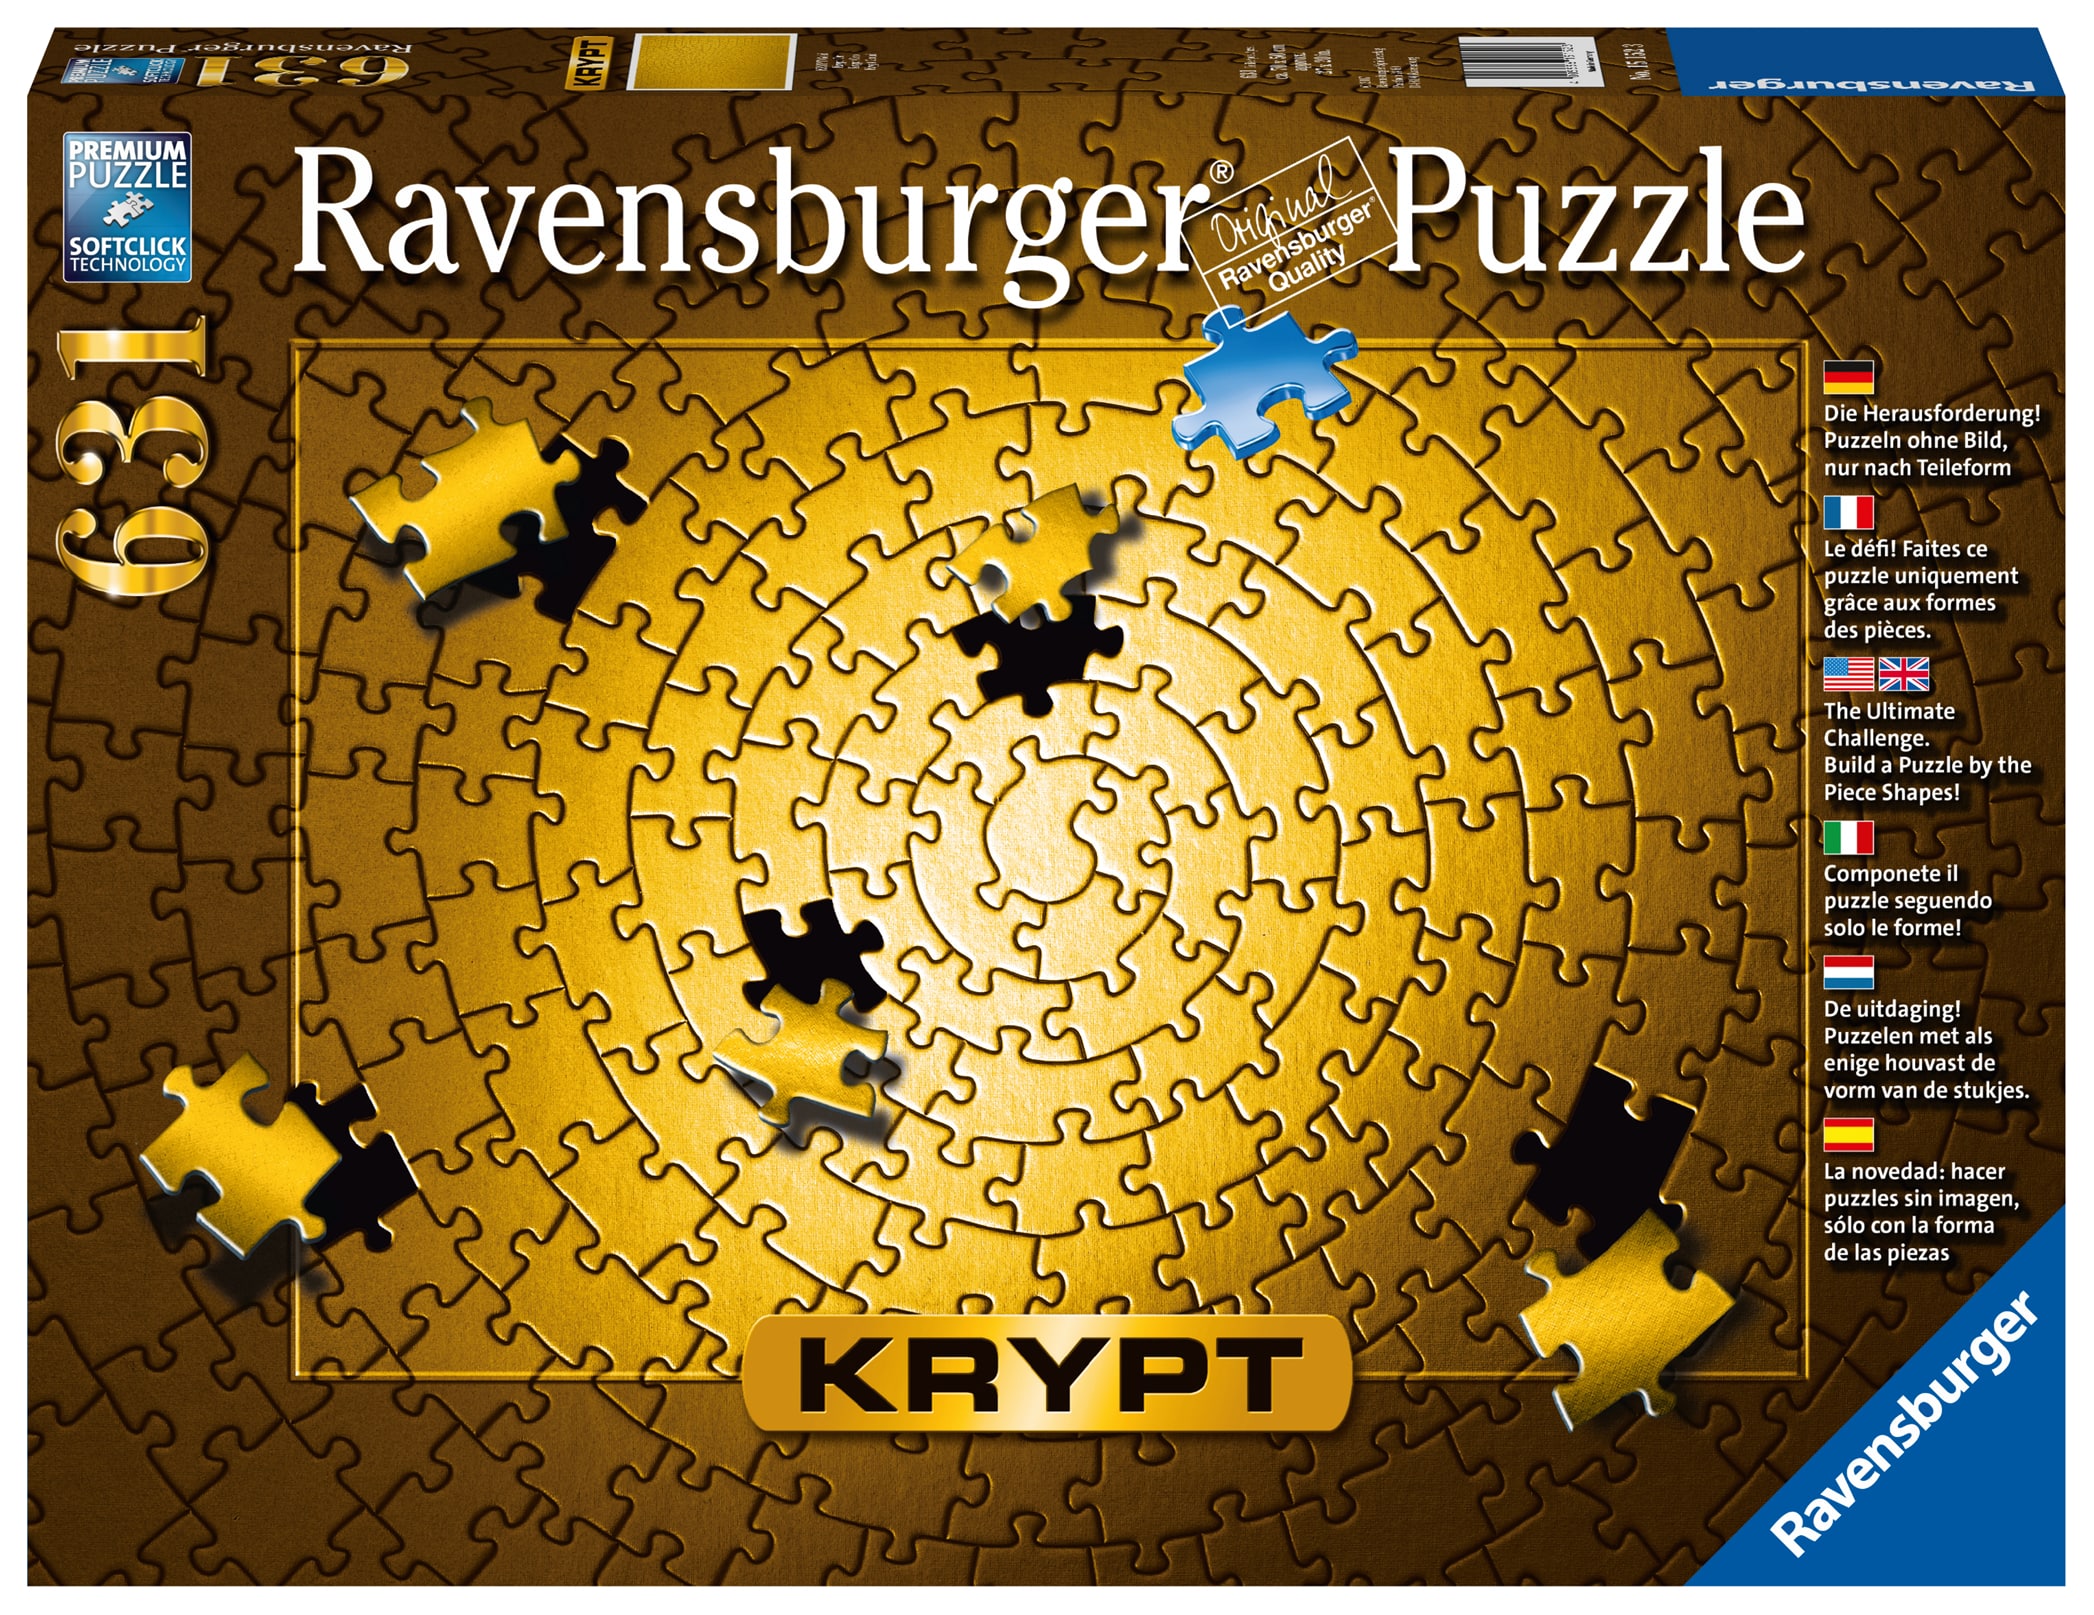  Ravensburger Krypt puzzle 631 p - Gold- - Puzzle